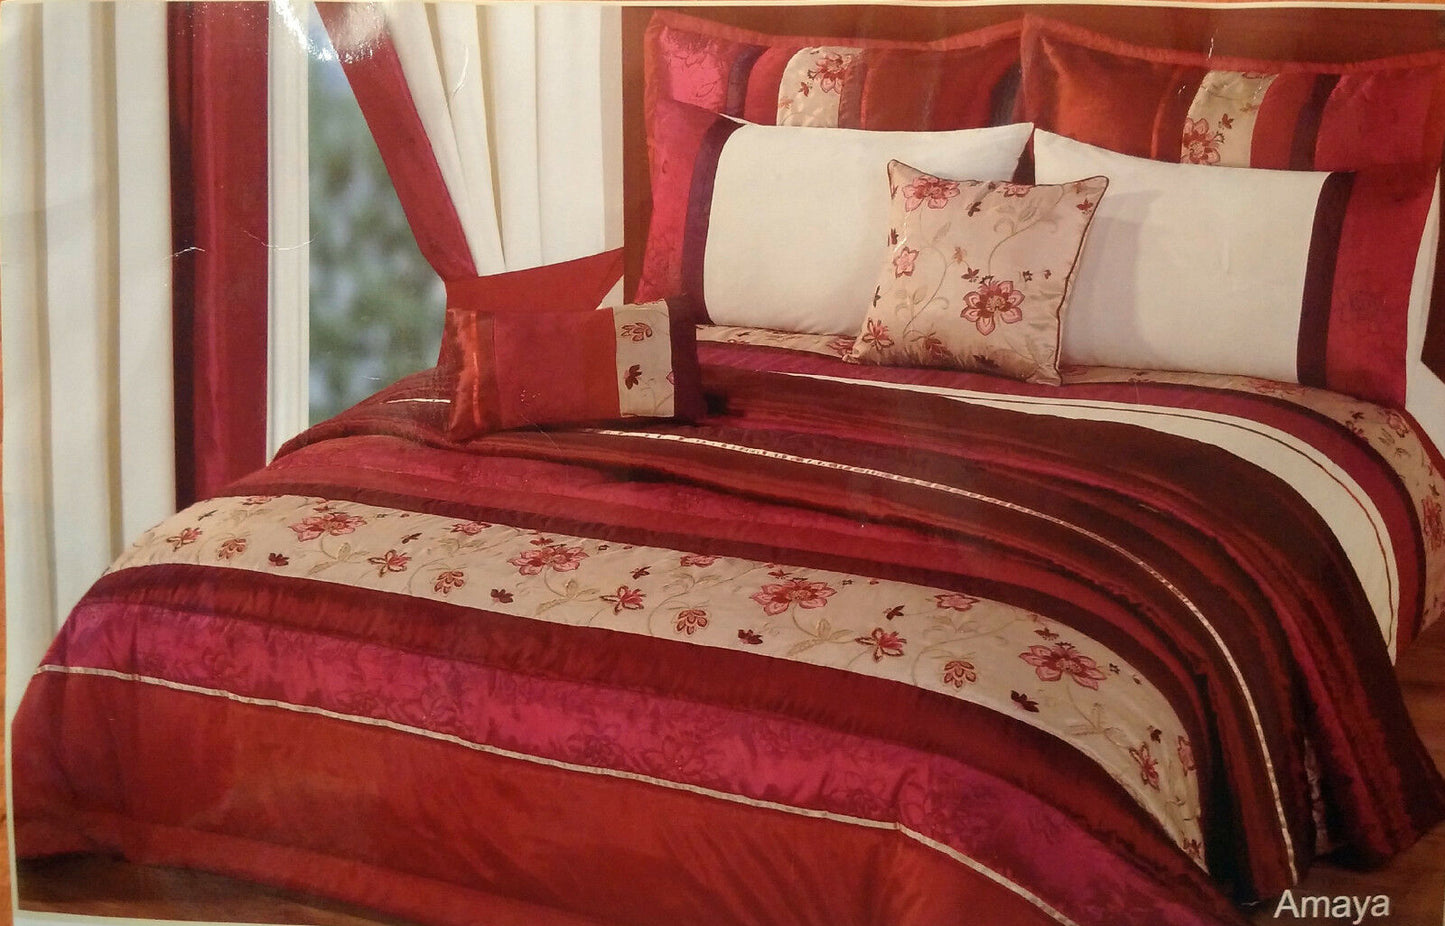 Single Bedspread Burgundy Wine Comforter Floral